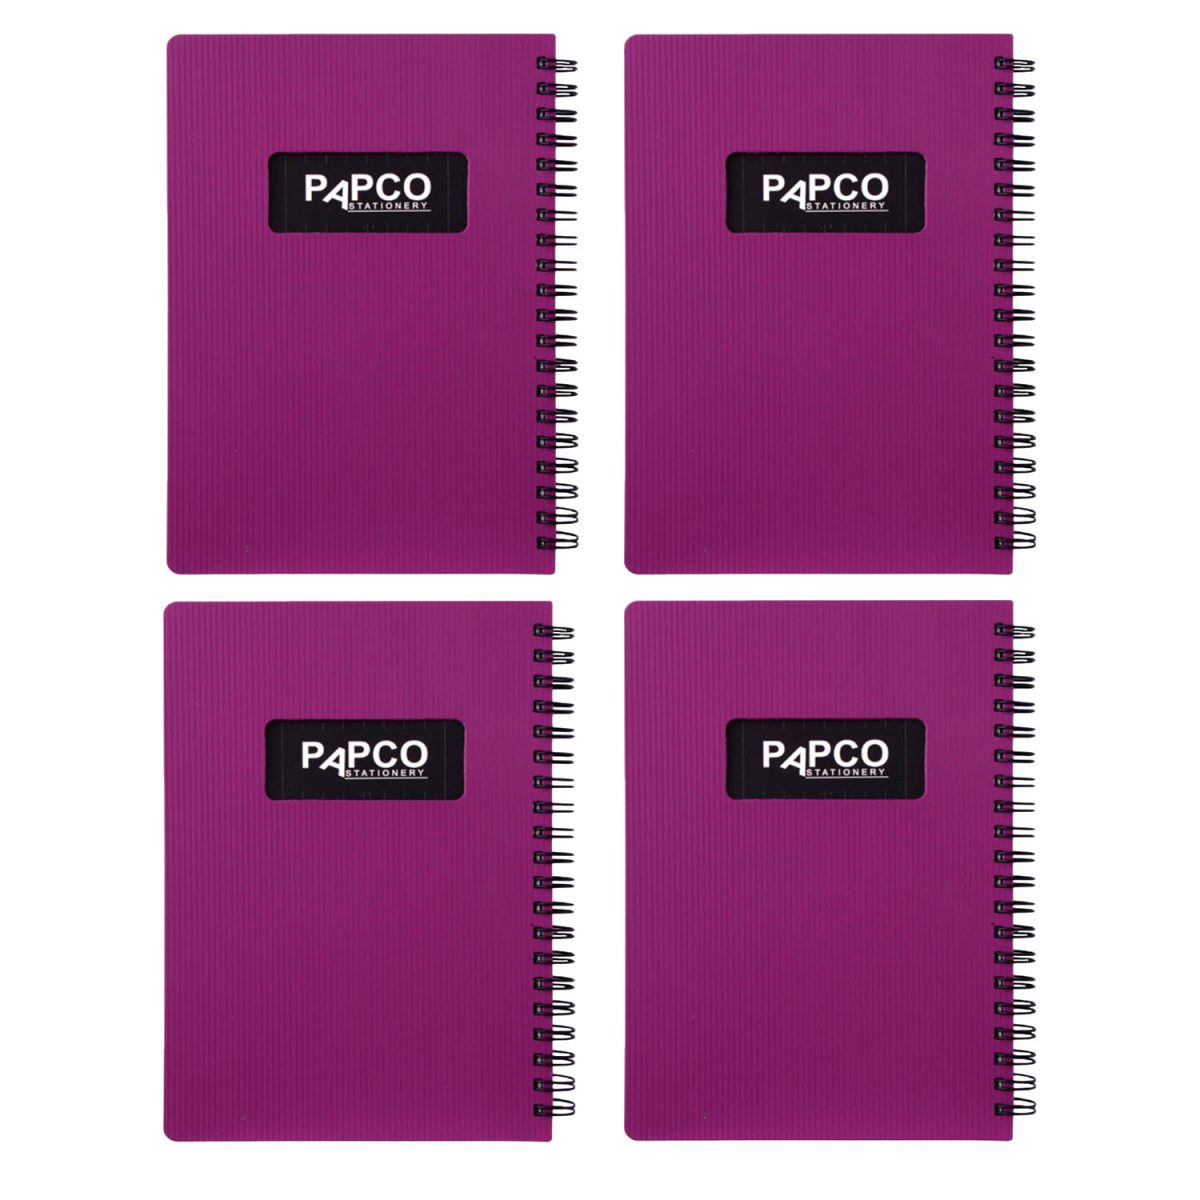 دفتر یادداشت پاپکو مدل 647 بسته 4 عددی